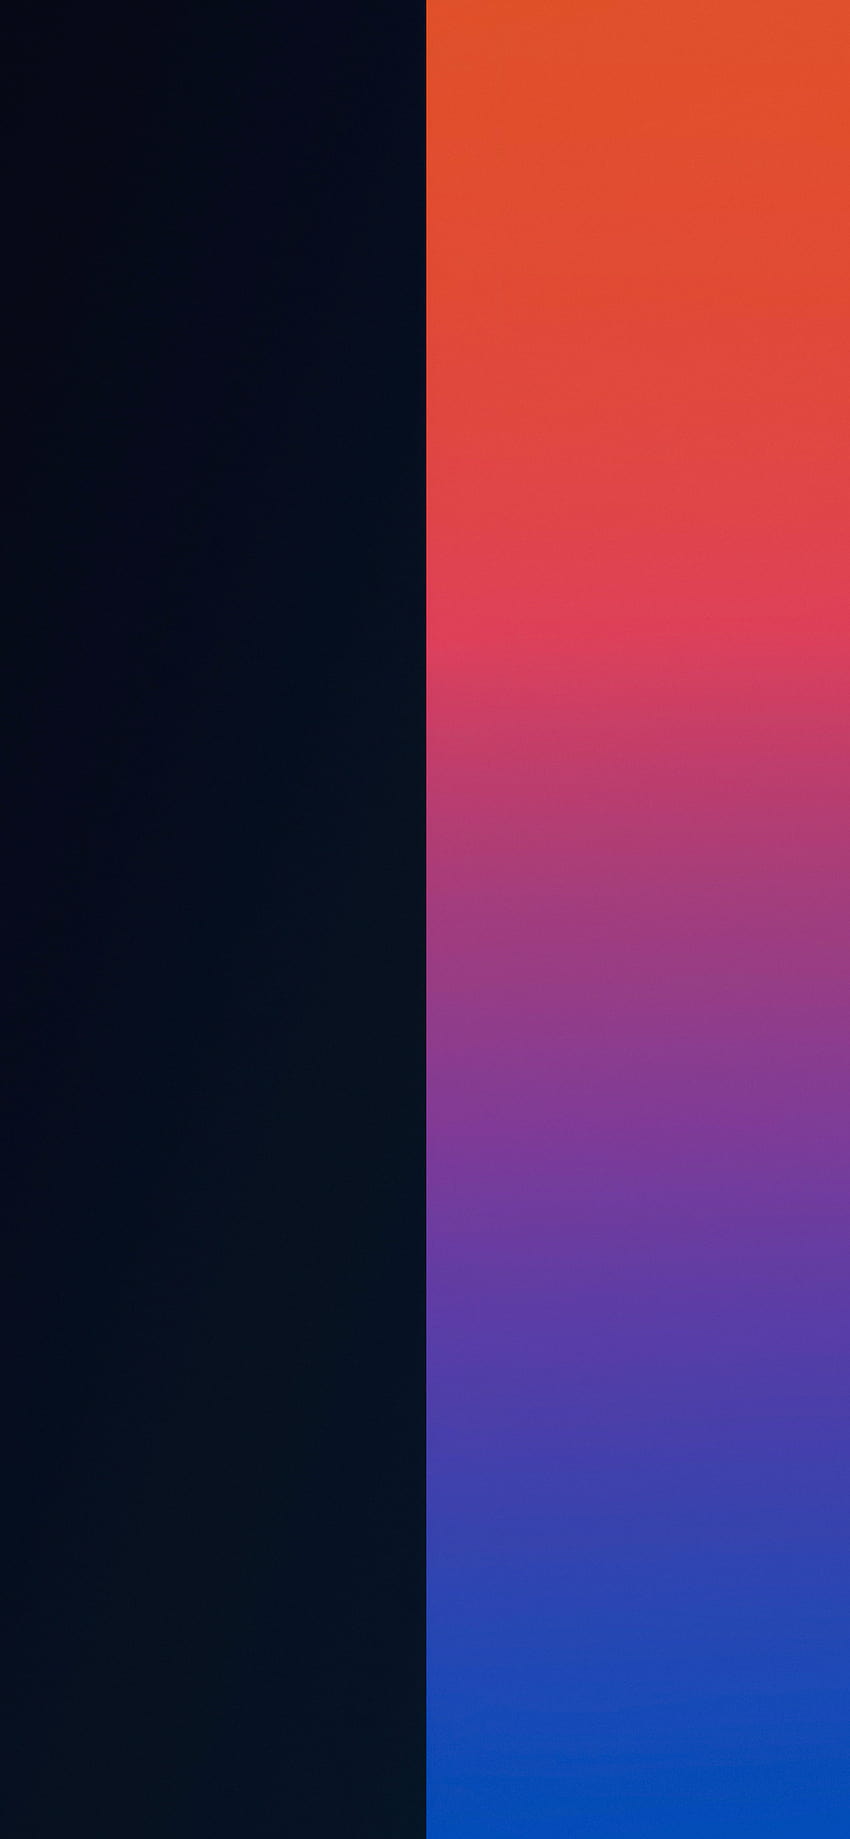 Duo iPhone z podzielonymi kolorami, najfajniejszy iPhone 2021 Tapeta na telefon HD